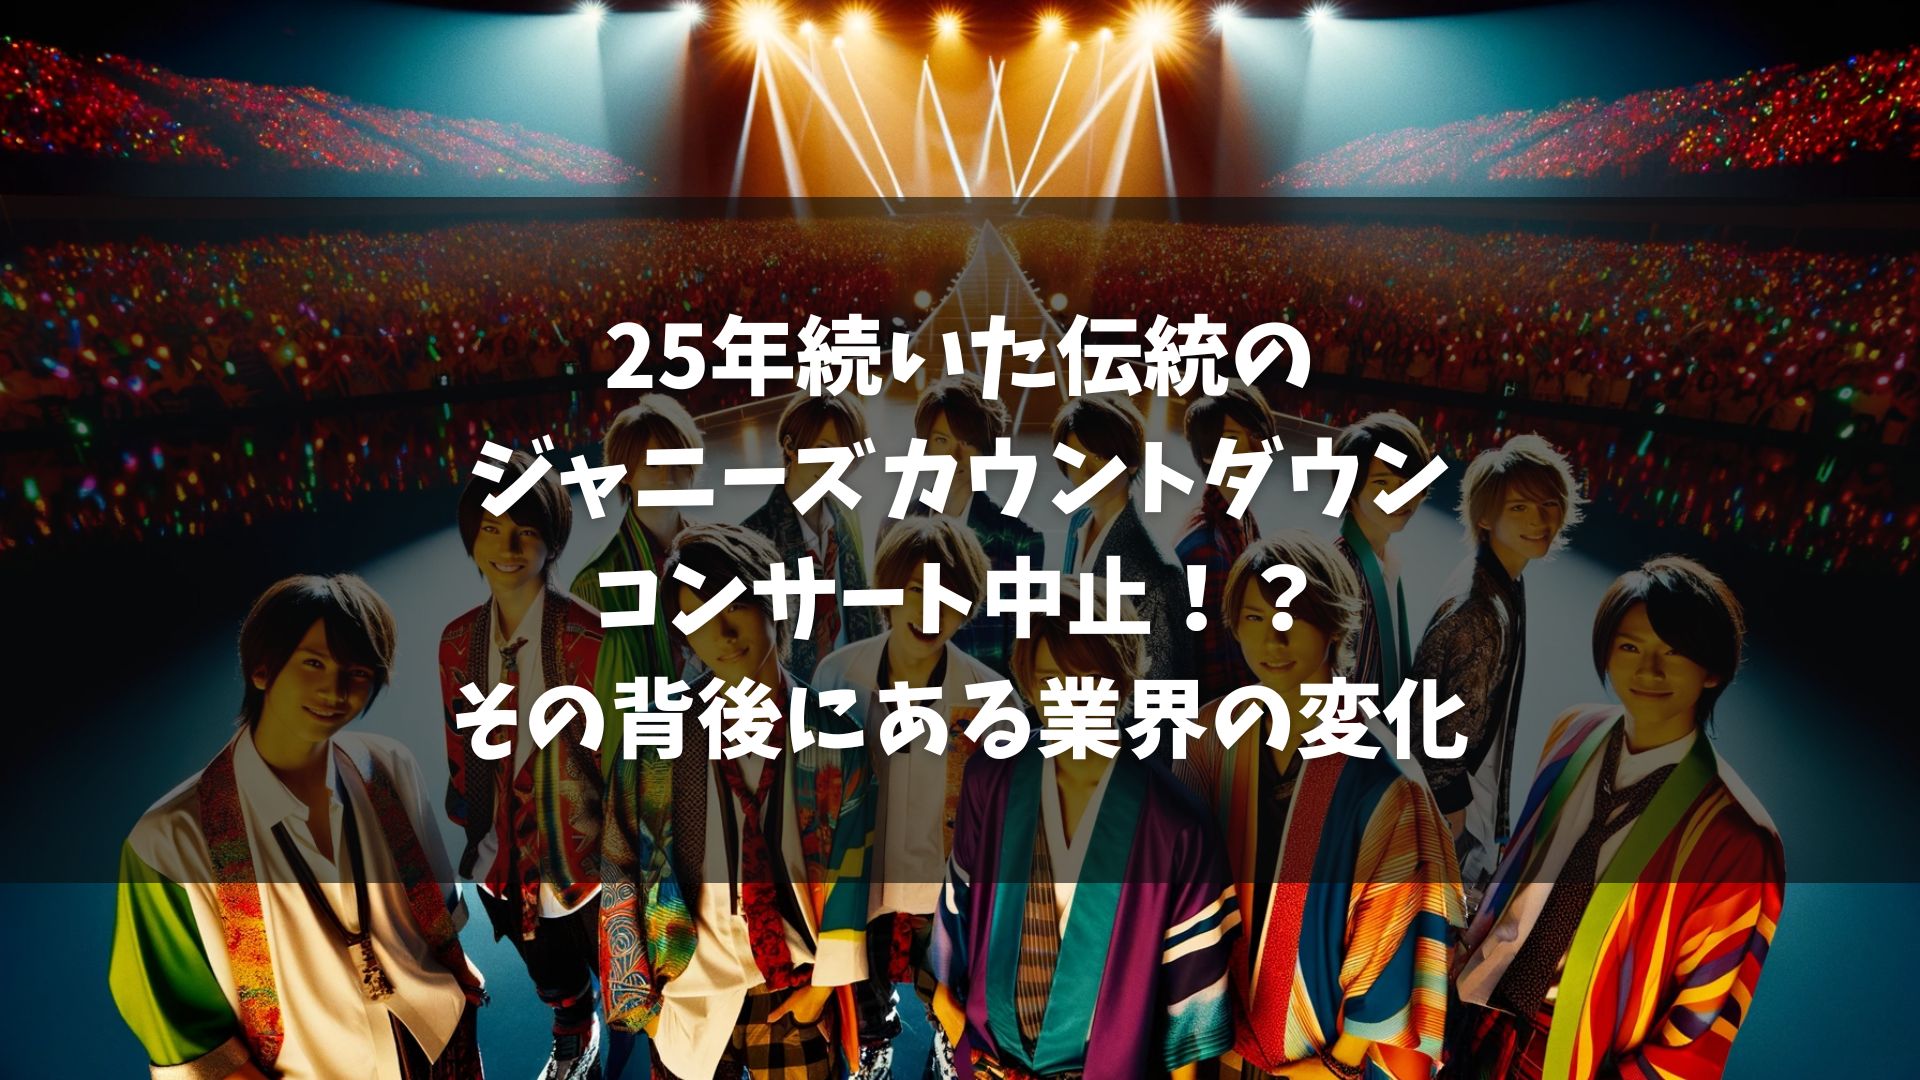 「SMILE―UP.」（旧ジャニーズ事務所）が、毎年恒例のカウントダウンライブ（カウコン）の開催を見送ることを発表。 新会社への移行準備期間中であり、開催に向けた調整が断念された。 カウコンは1998年から25年連続で行われていたが、今年は開催されない。 東京ドームではHey！Say！JUMPがコンサートを開催予定で、物理的にカウコン開催は可能だった。 新会社の体制整備の遅れと、タレントとの契約スケジュールの先延ばしが断念の理由。